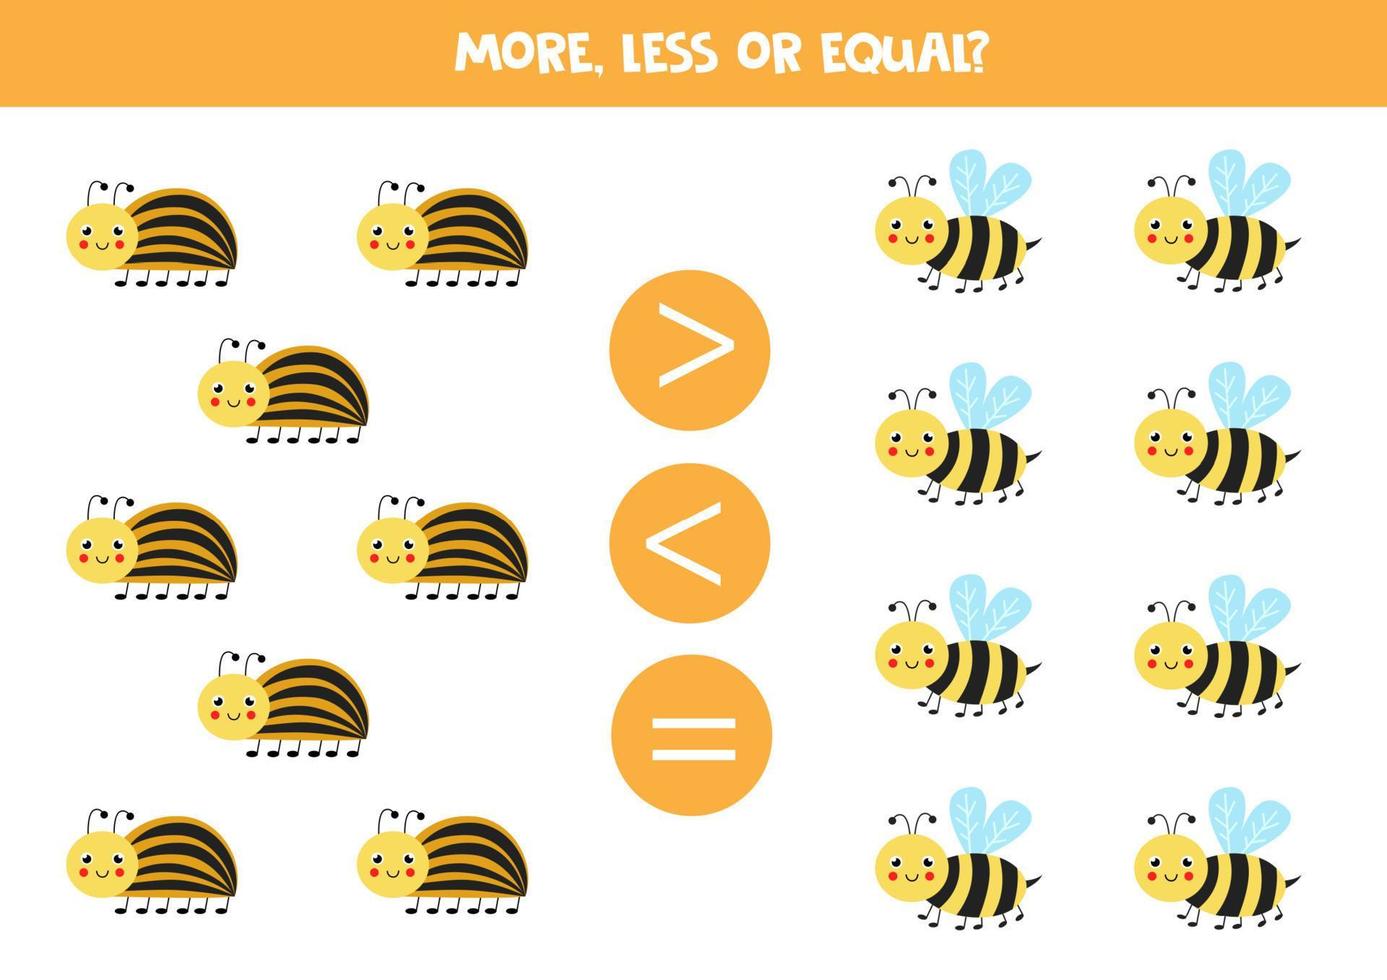 mais, menos ou igual a abelhas de desenhos animados e besouros do Colorado. vetor